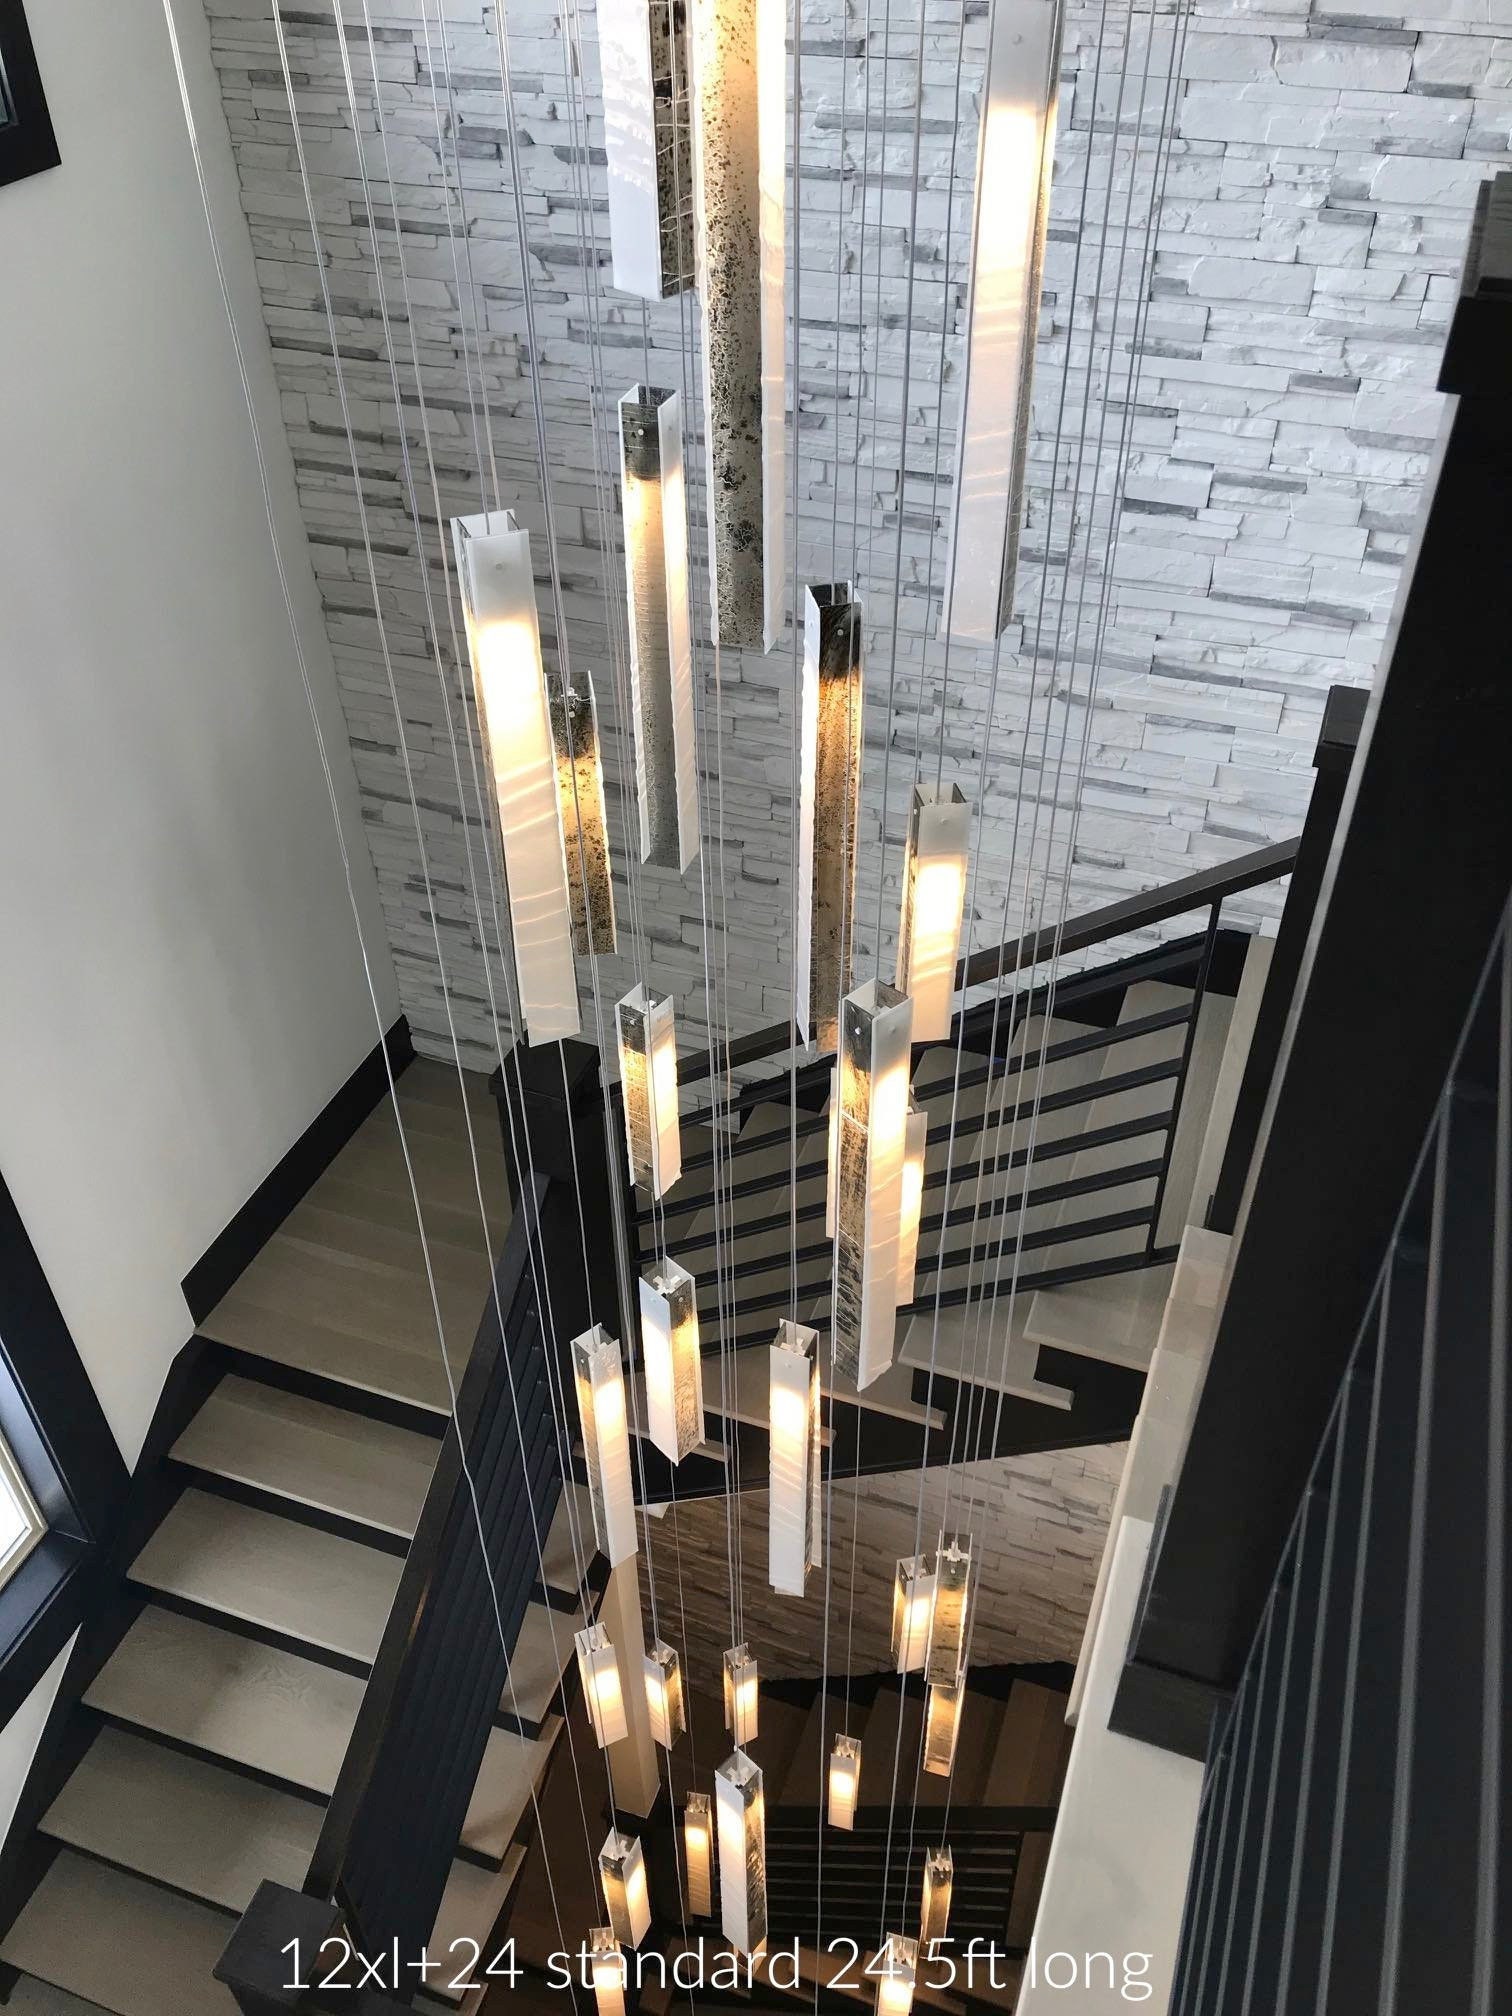 [Weniger als der halbe Preis] Foyer Lighting, Pendant Light for Stairway - Long Light Entryway. Chandelier Rustic Staircase Chandelier. Etsy Lighting Chandelier Pendant